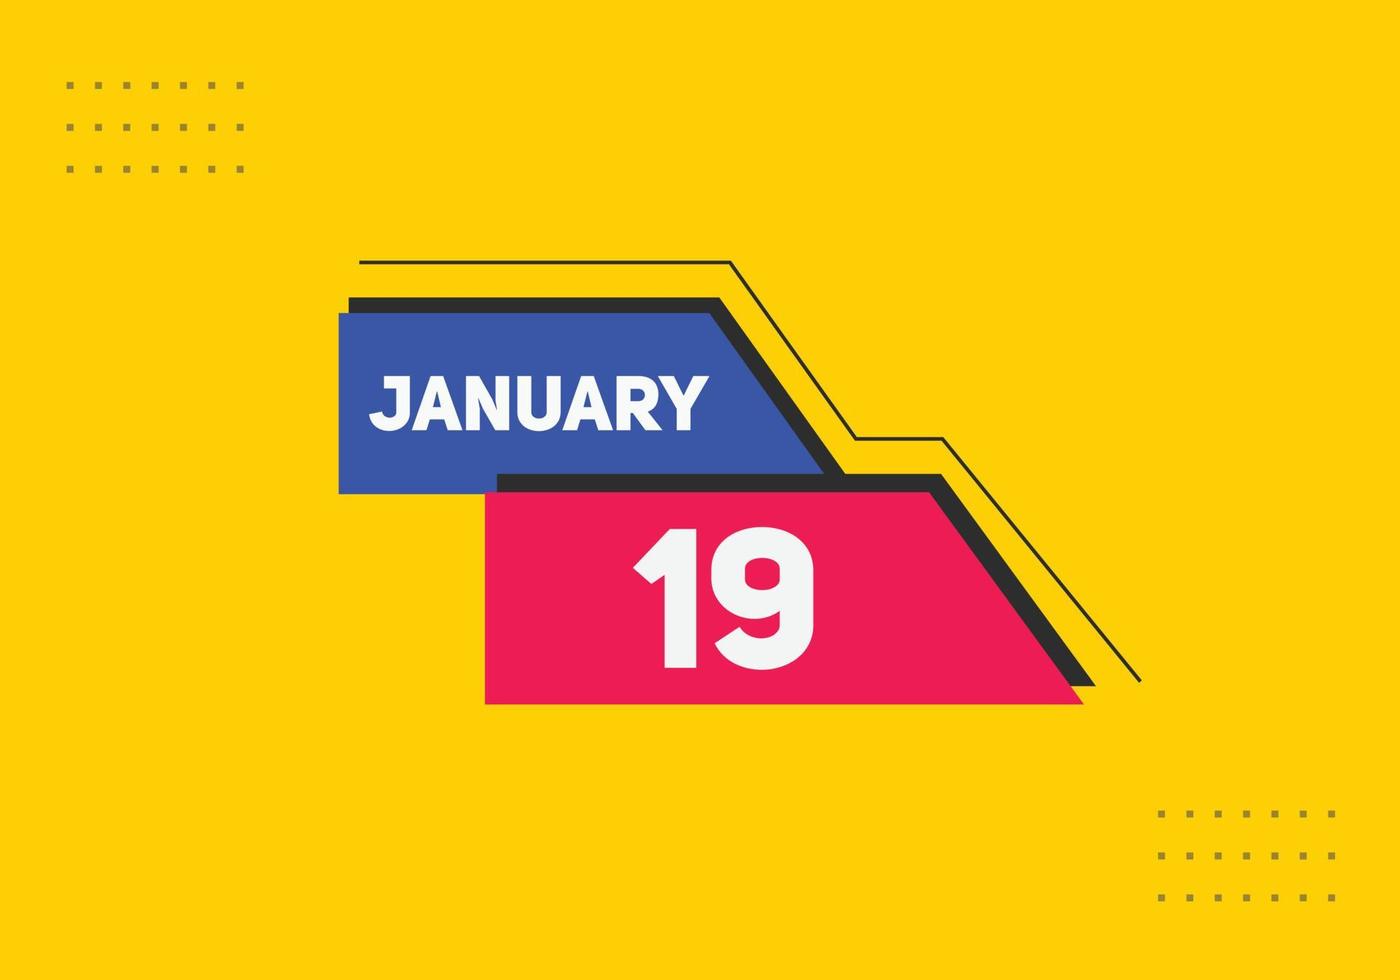 19. januar kalender erinnerung. 19. januar tägliche kalendersymbolvorlage. Kalender 19. Januar Icon-Design-Vorlage. Vektor-Illustration vektor